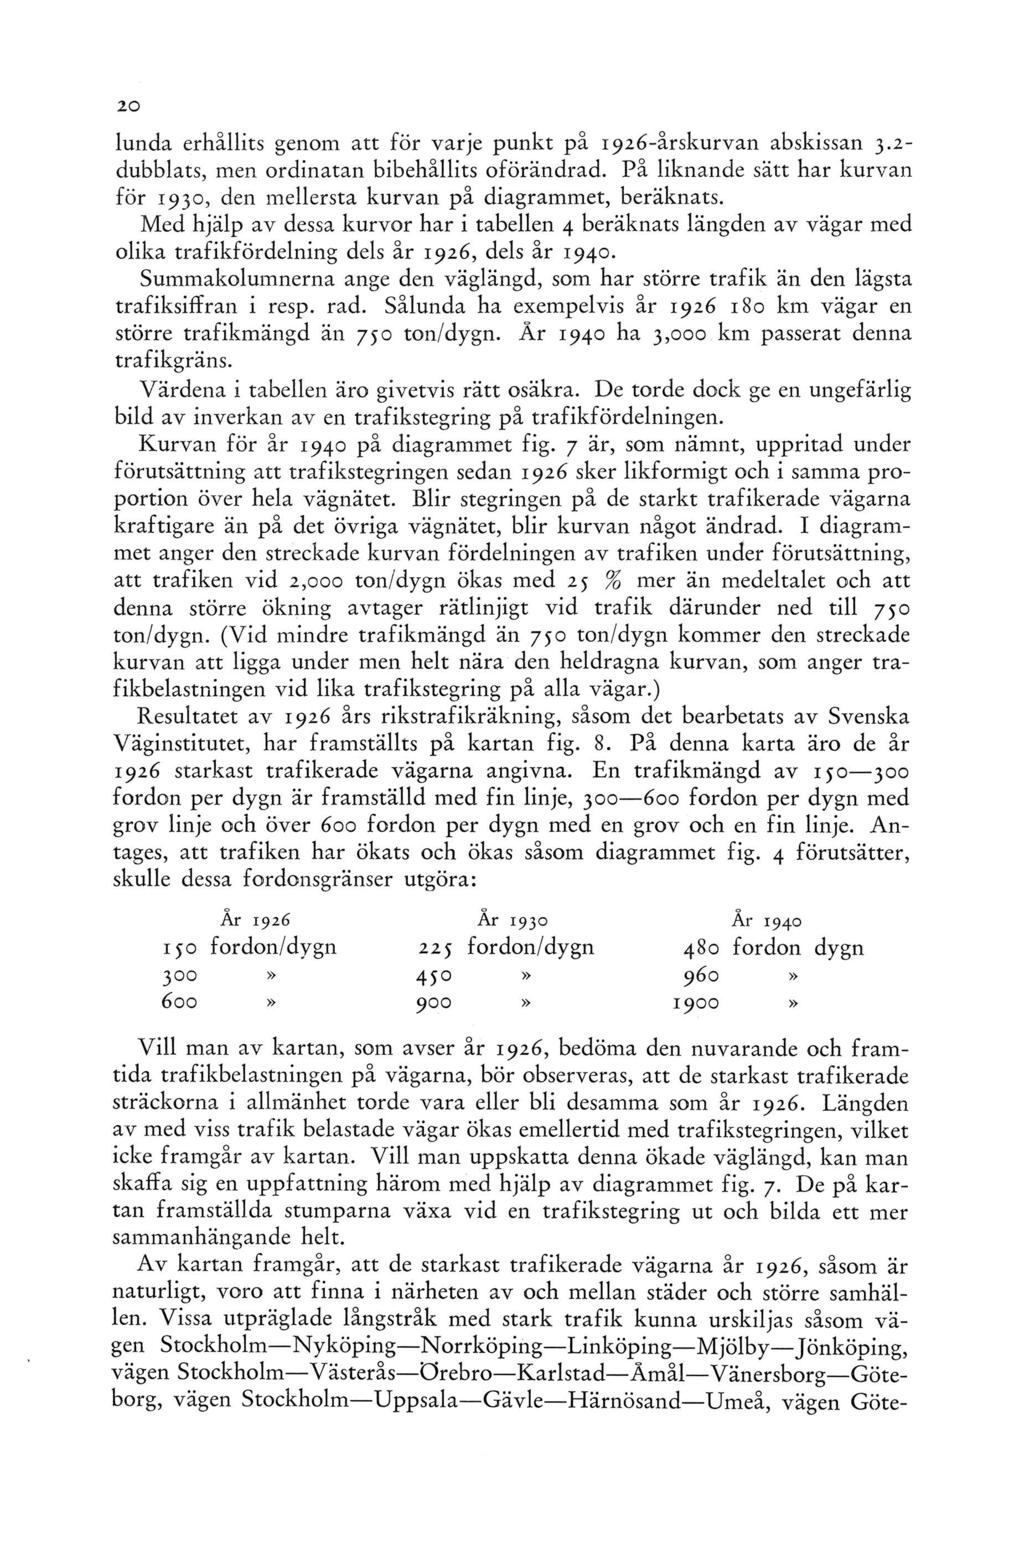 lunda erhållits genom att för varje punkt på 1926-årskurvan abskissan 3.2- dubblats, men ordinatan bibehållits oförändrad.